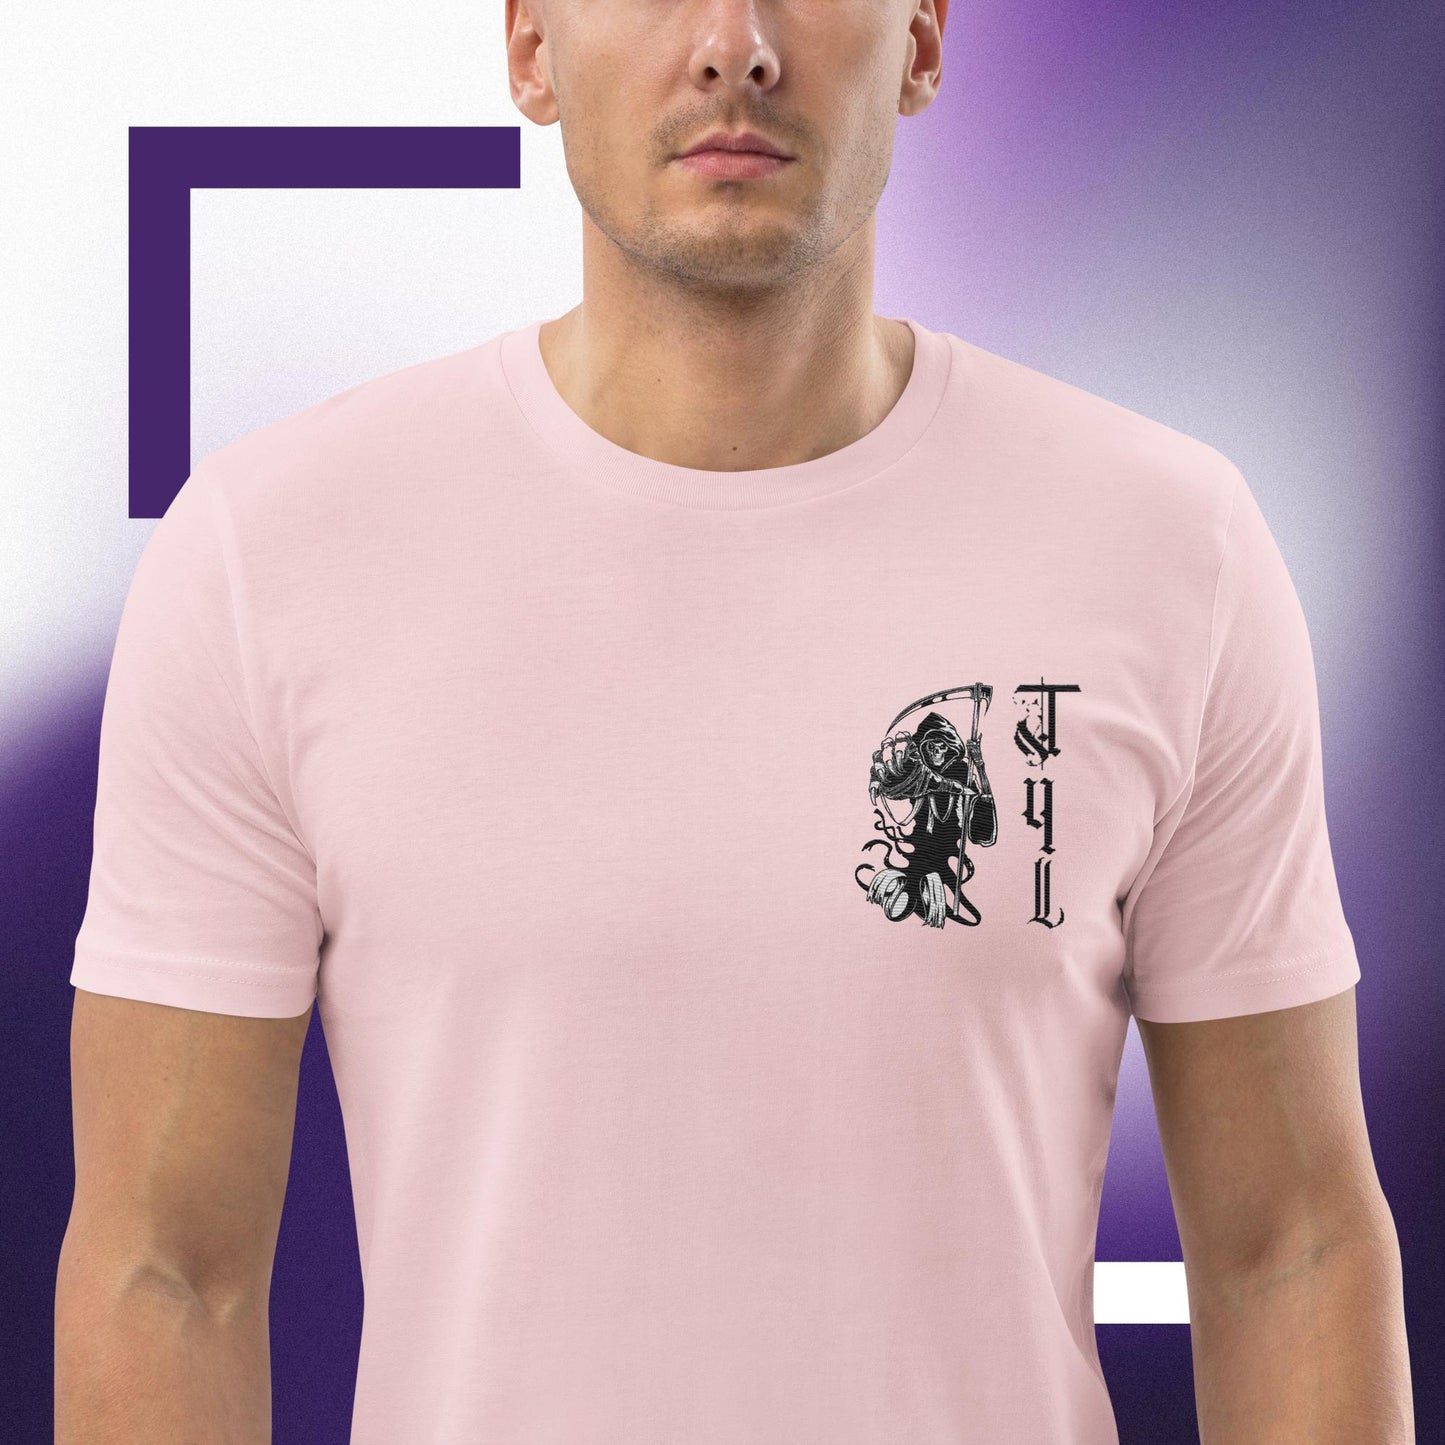 T4L unisex t-shirt